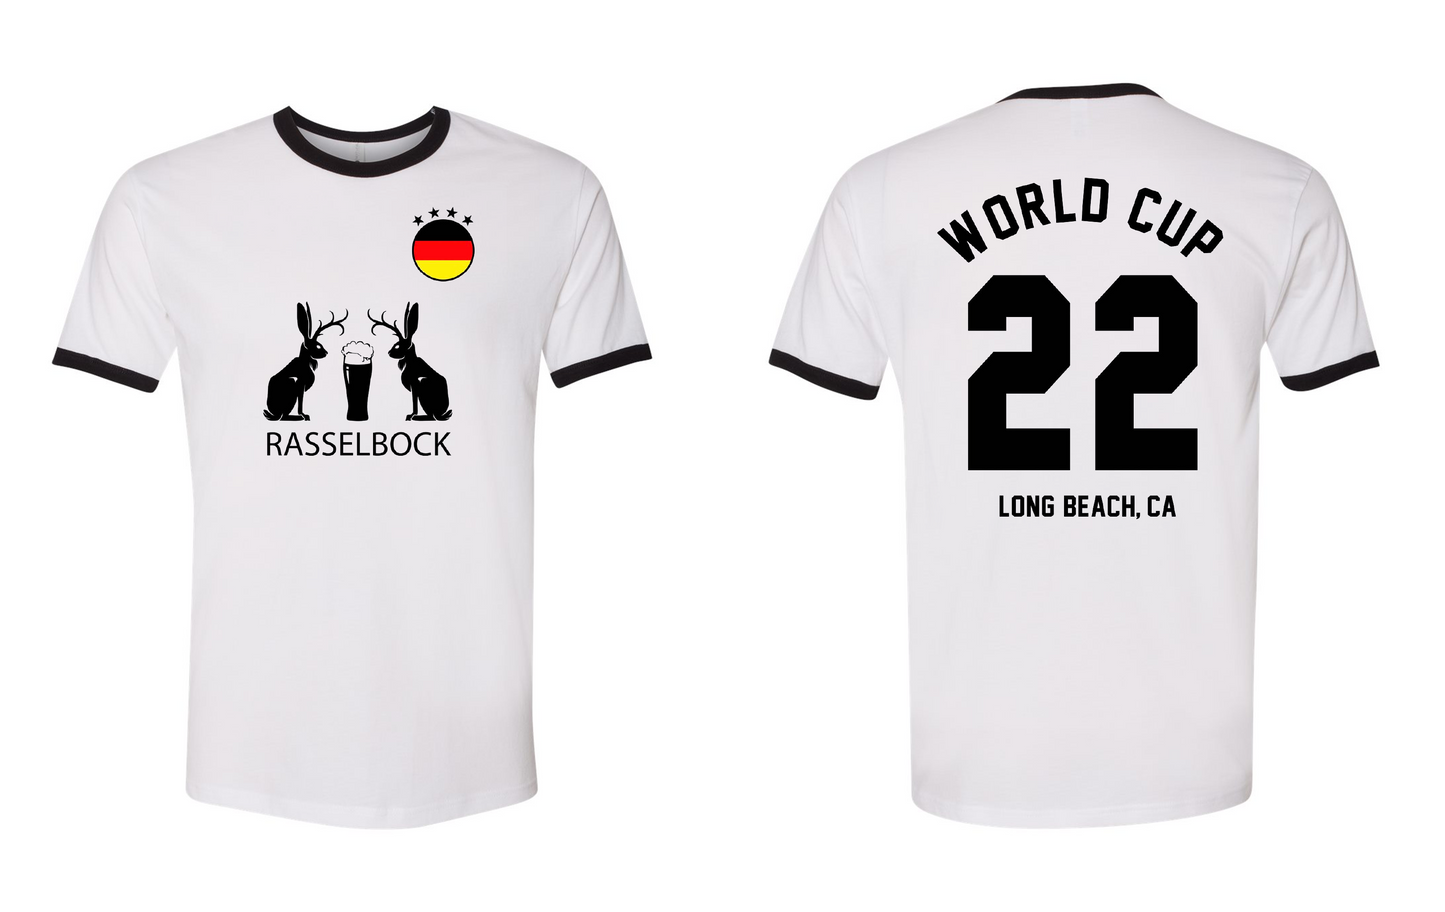 Wirtshaus - Rasselbock World Cup Next Level Jersey - 300 Quantity